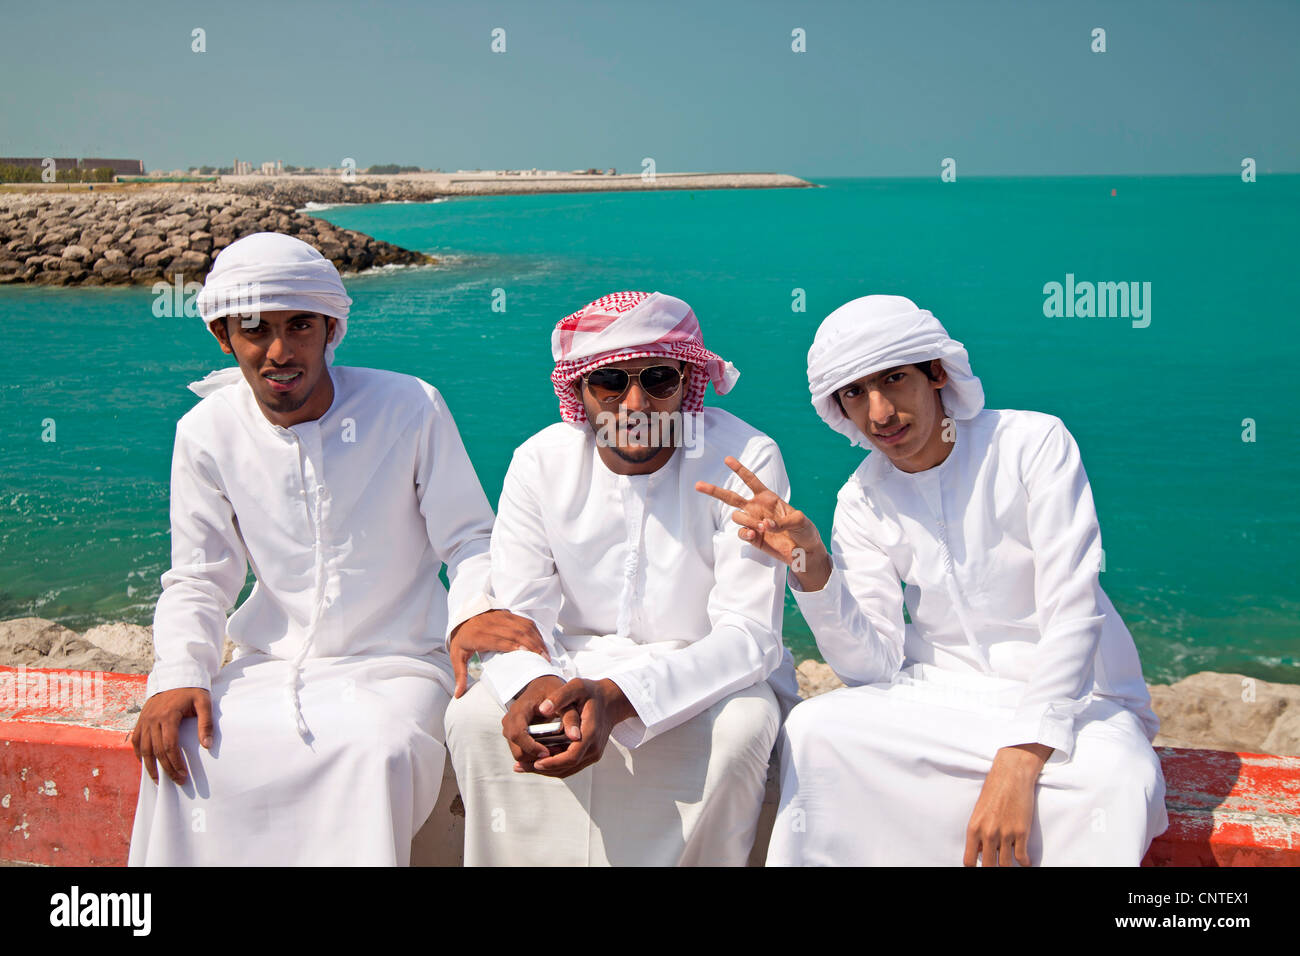 jungen männliche Einheimischen mit ihren typischen traditionellen arabischen Kleid Kandora oder Dishdasha, Abu Dhabi, der Hauptstadt der Vereinigten Arabischen E Stockfoto